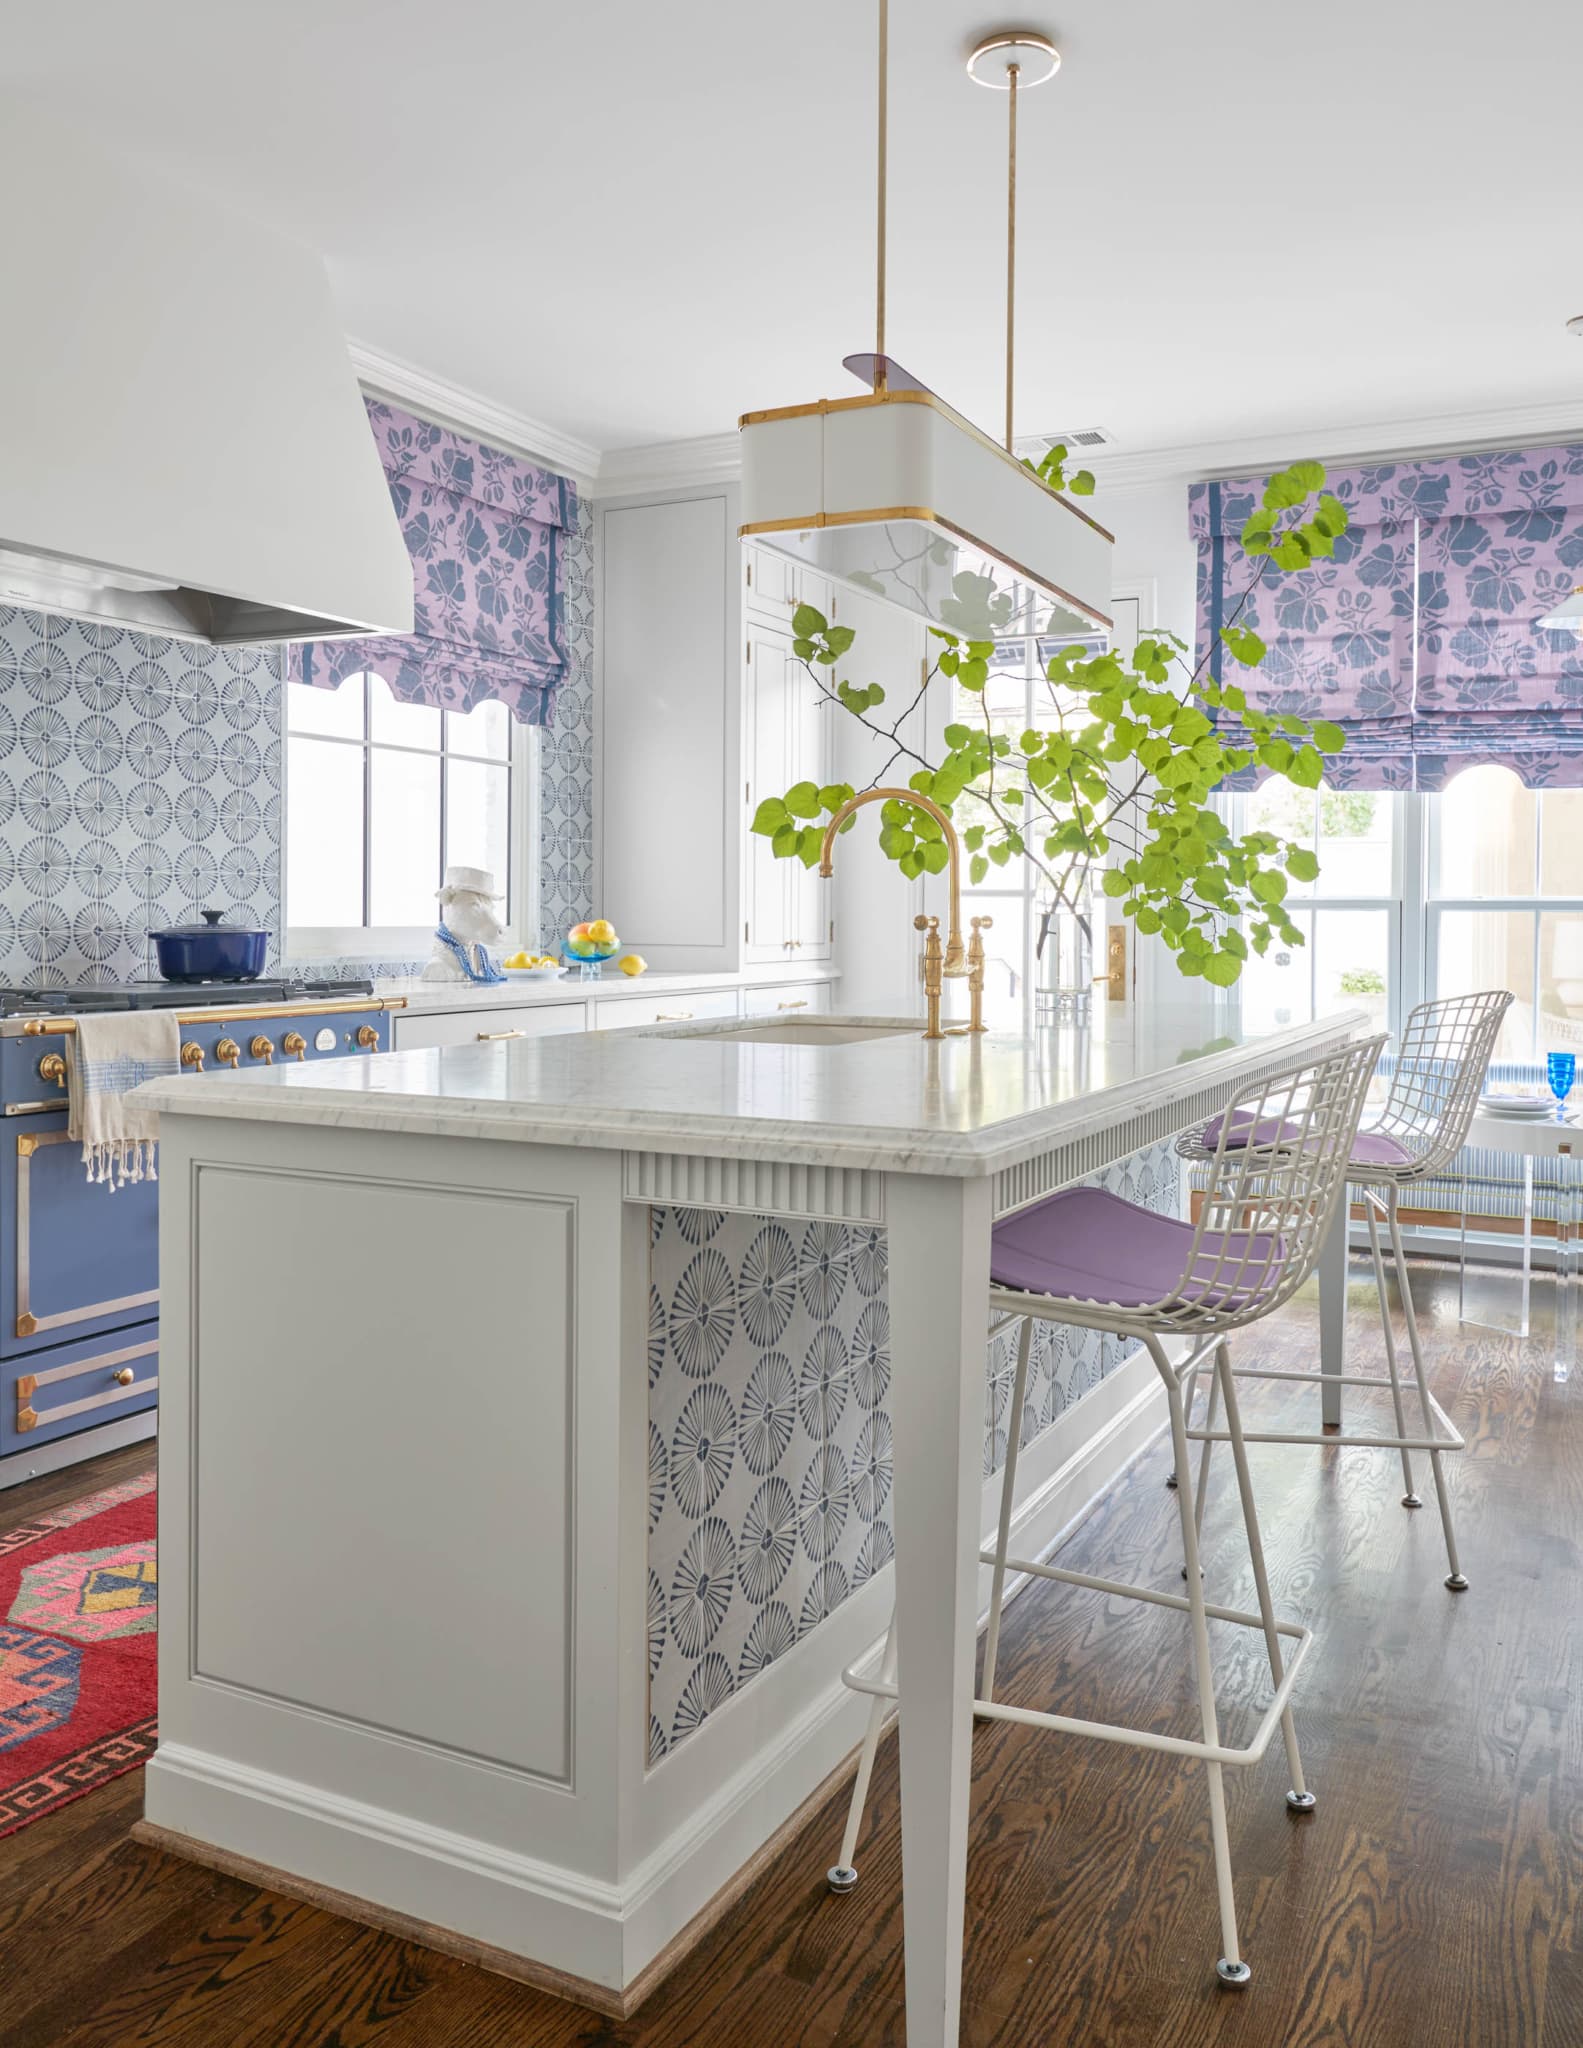 Delightful home in dallas with Collins Interiors | Nathan Schroder Photography | kitchen - kitchen design - kitchen remodel - kitchen makeover